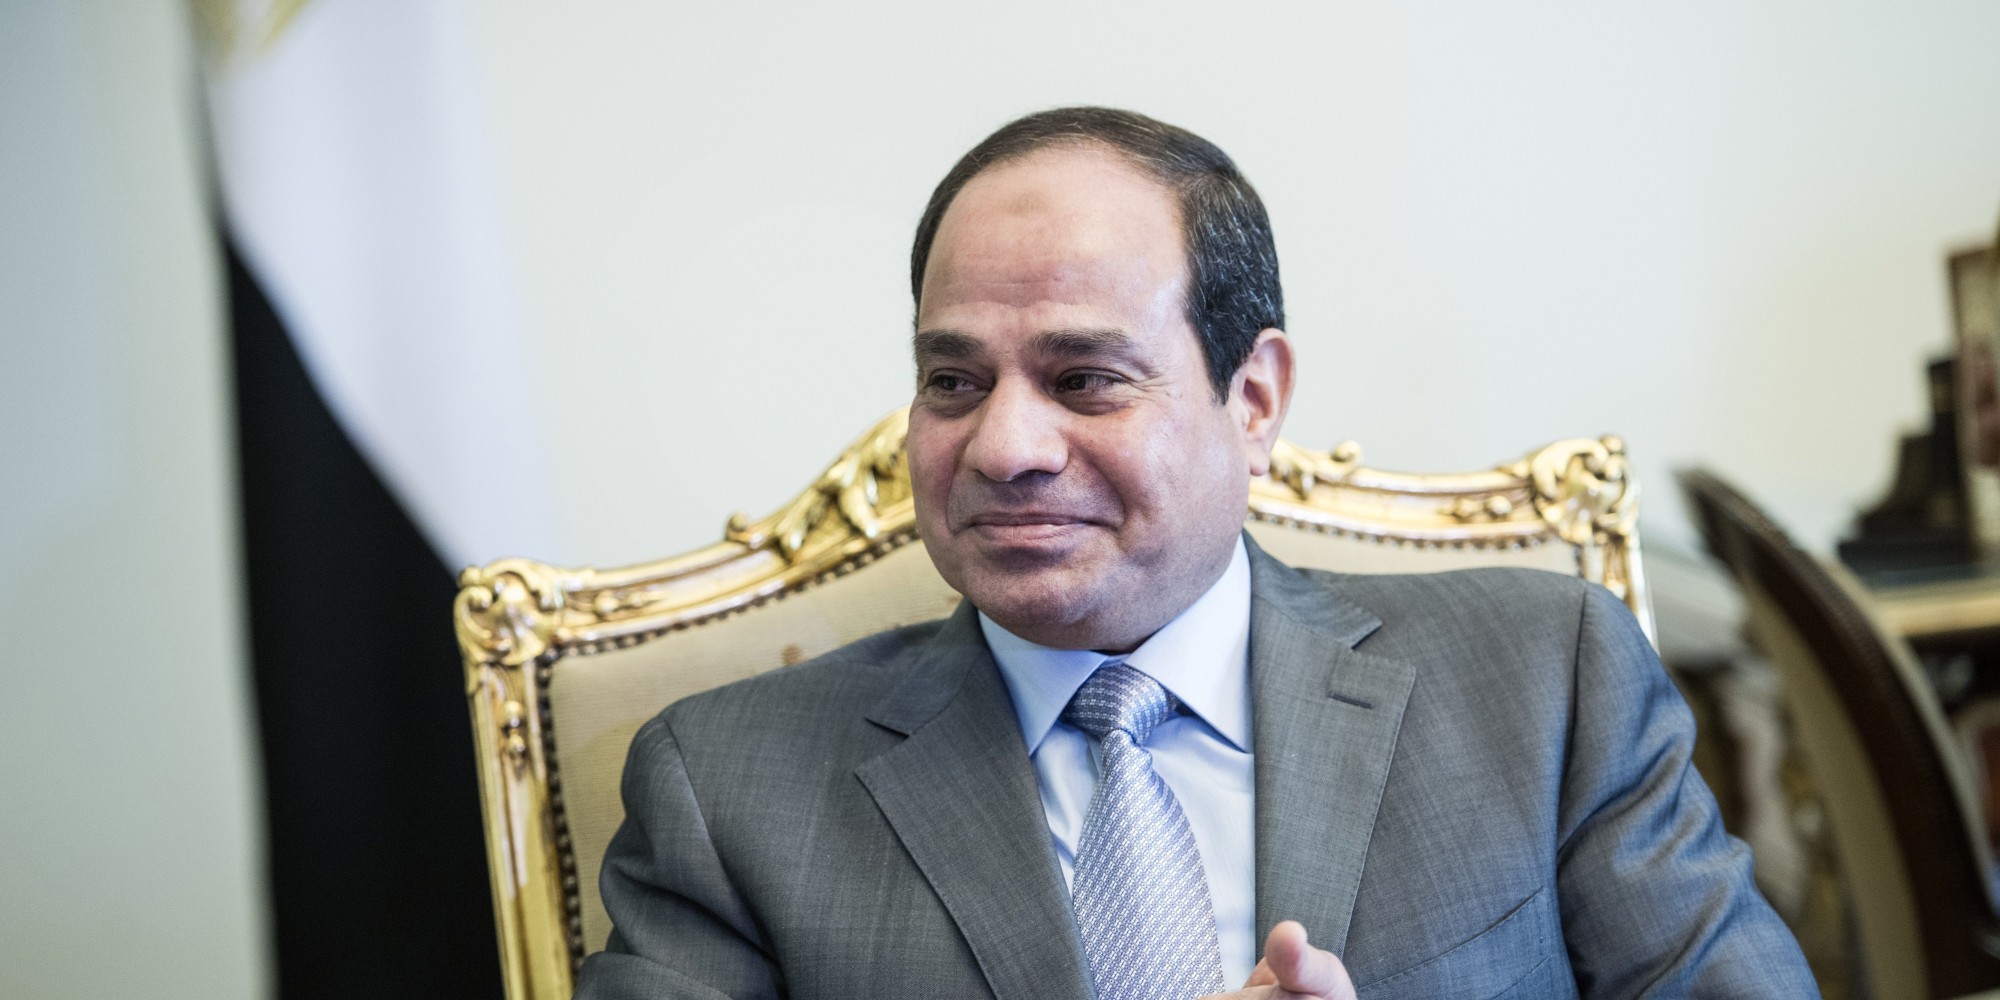   نقيب الفلاحين يهنئ الرئيس السيسي والمصريين بعيد الأضحى المبارك